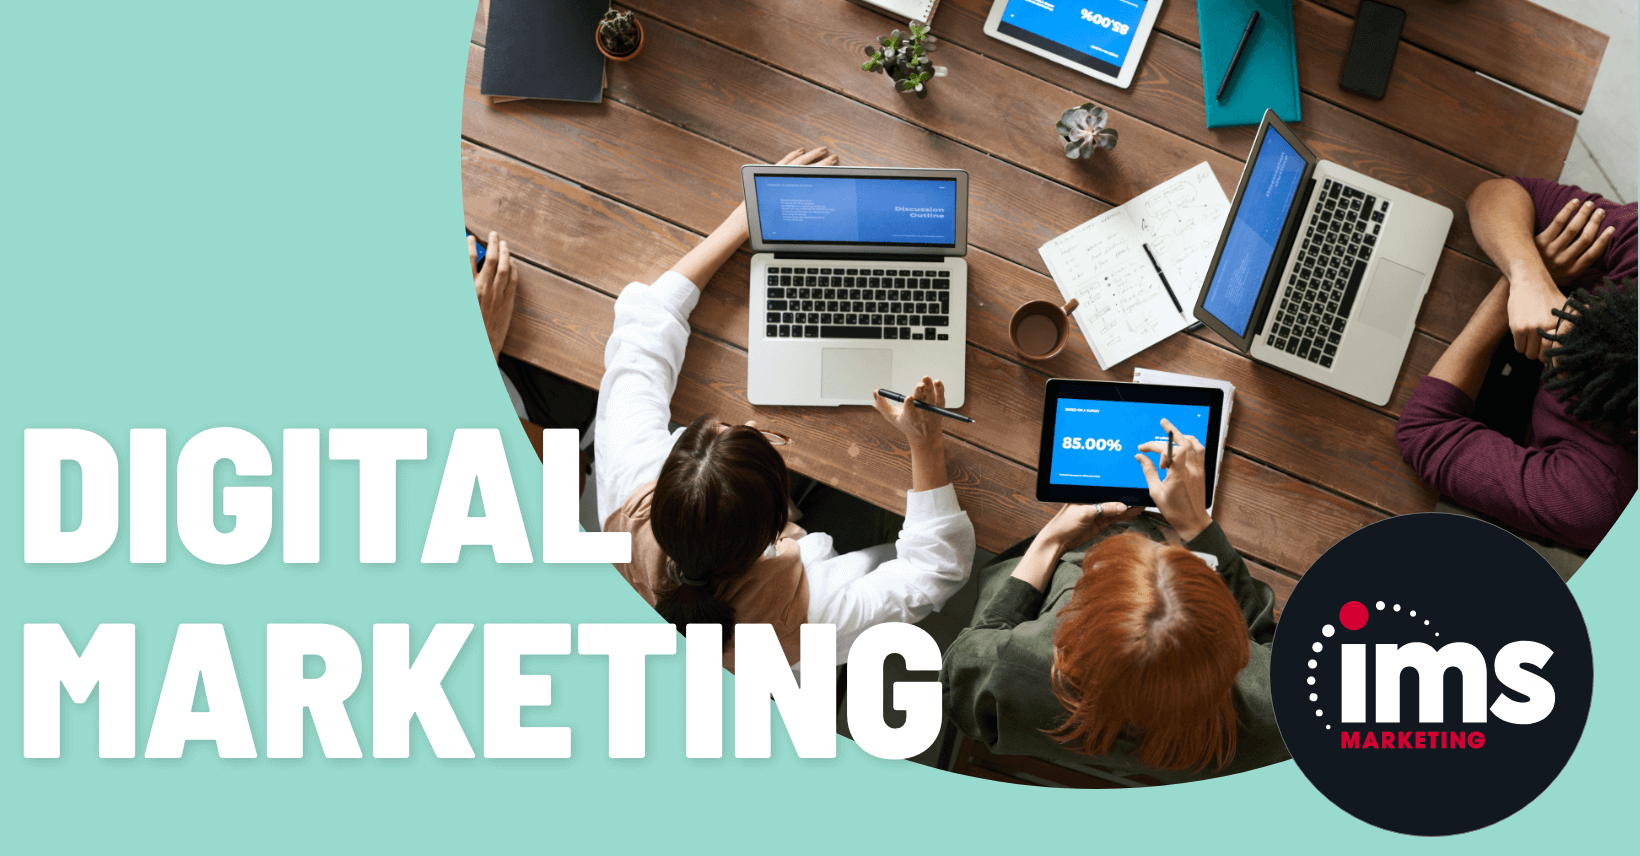 Lomond Digital Marketing Agency - Full Service Digital Marketing